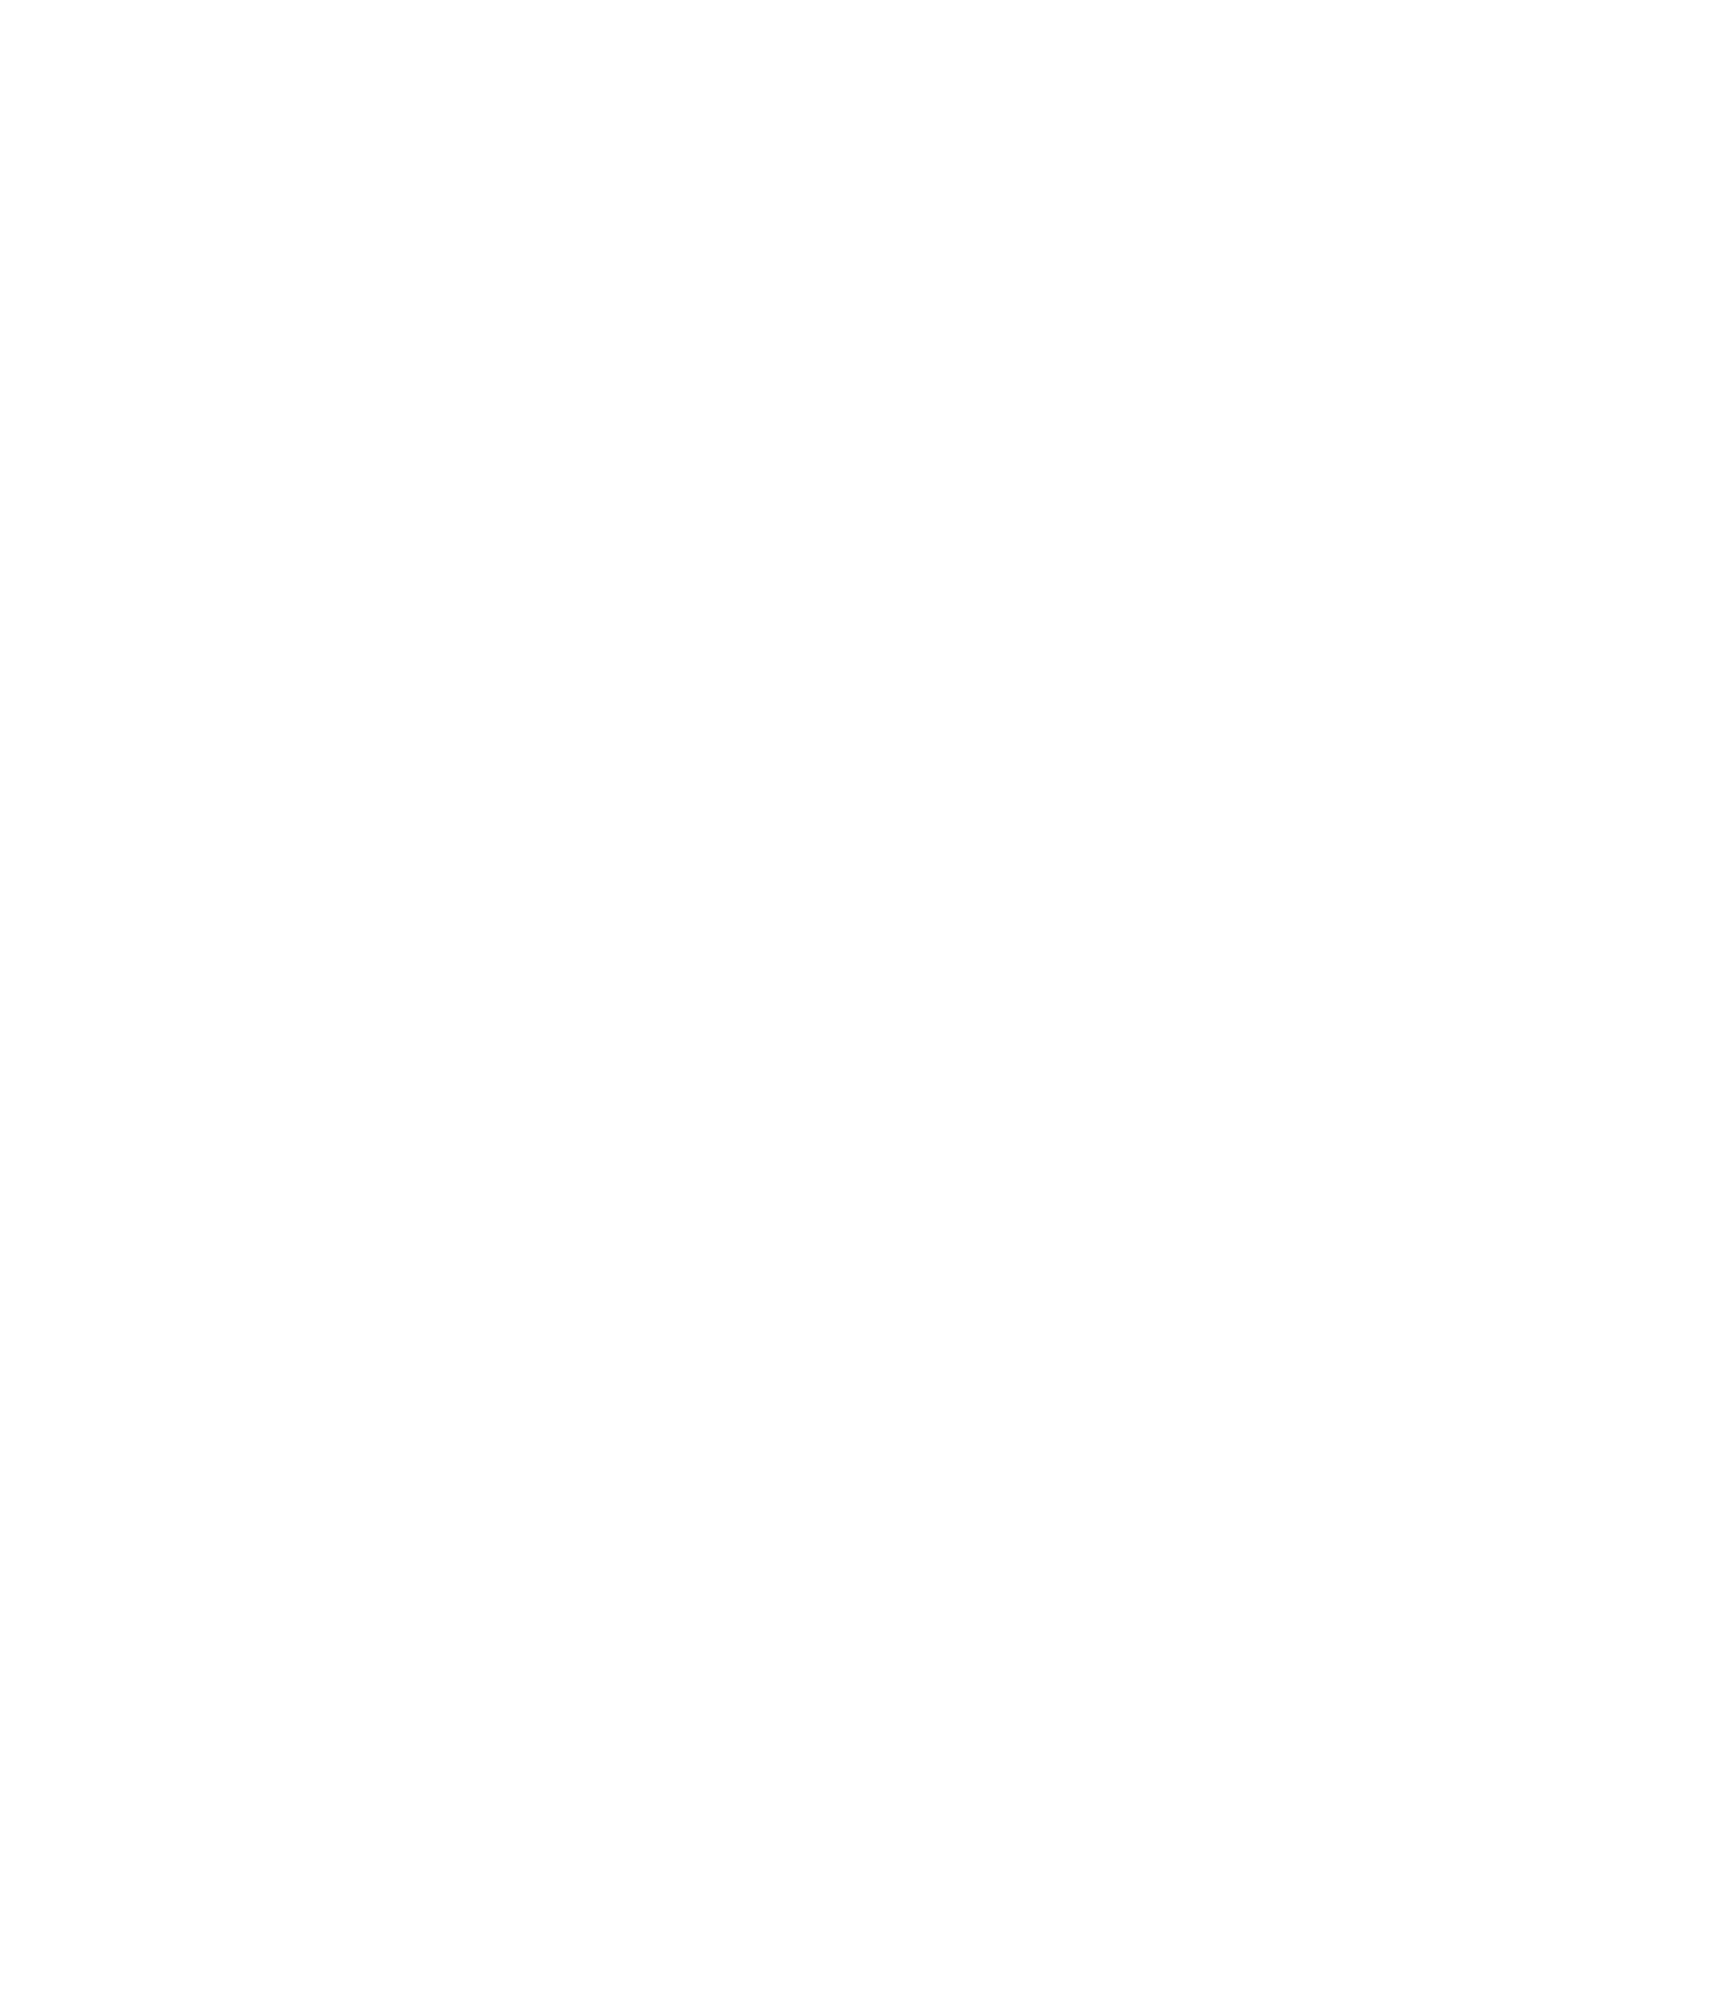 VPG Logo - VPG